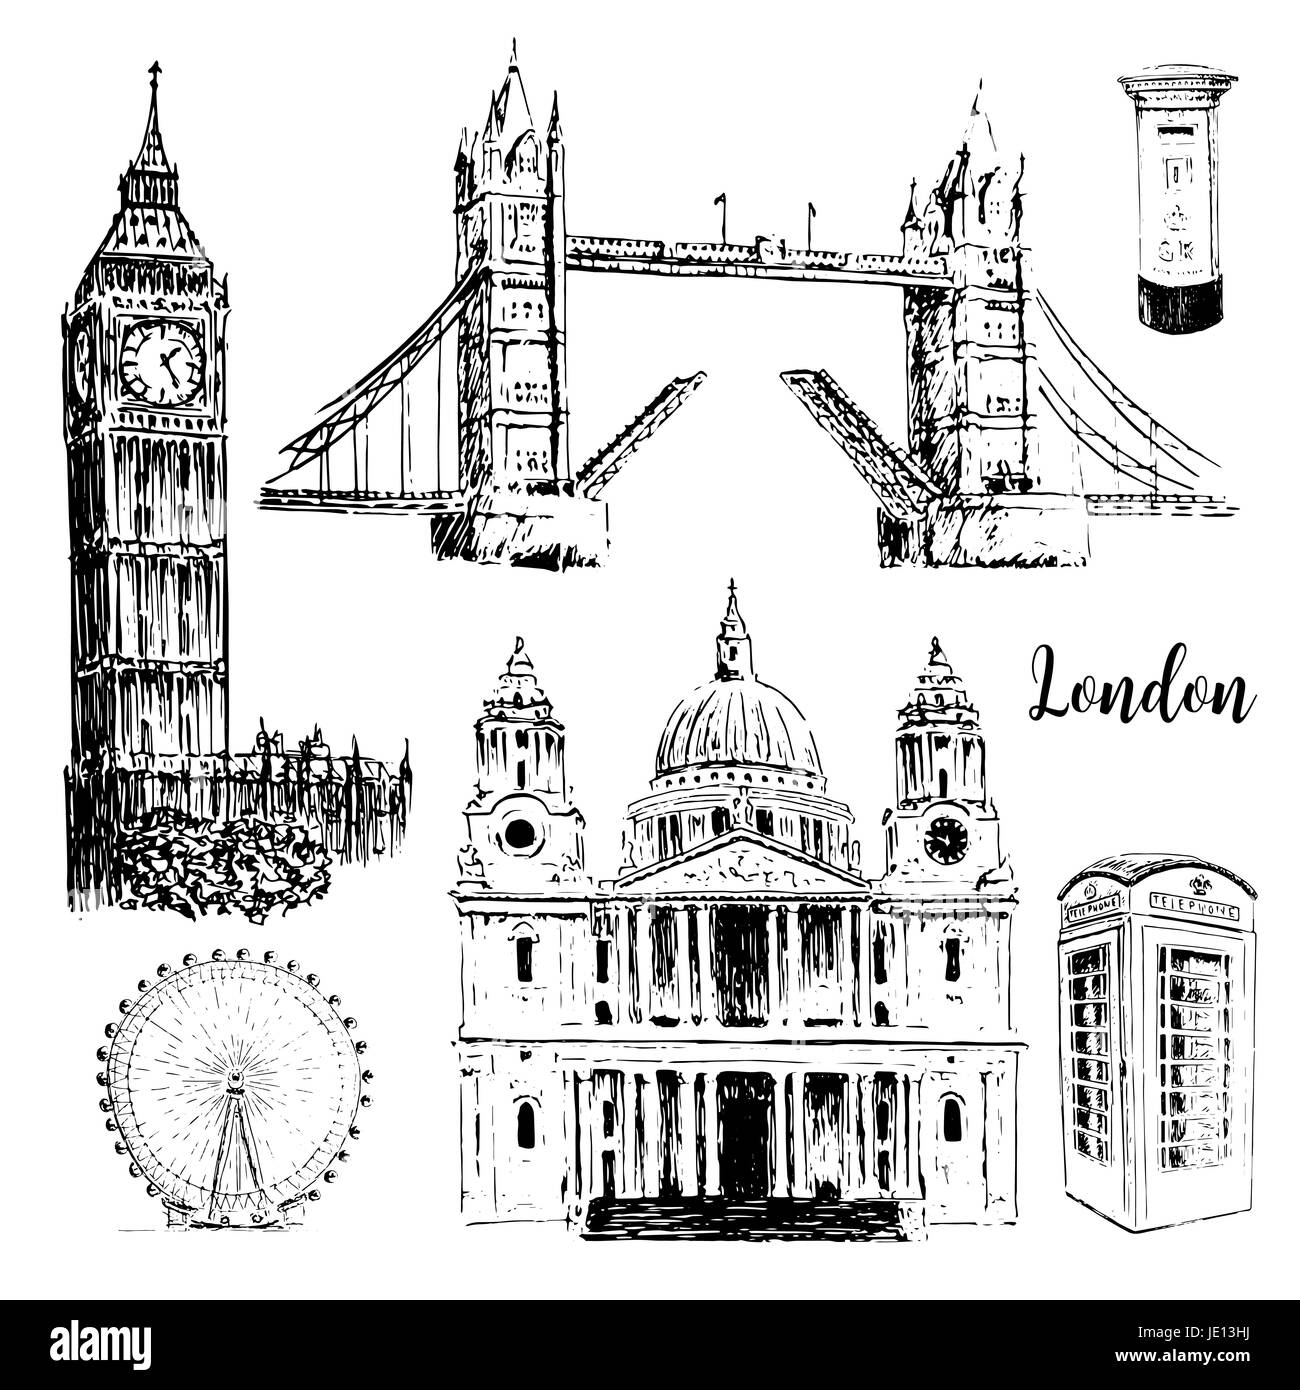 Architektursymbole London: St. Paul Cathedral, Tower Bridge, London Eye und Big Ben. Wunderschöne handgezeichnete Skizze Vektorgrafik. Für Drucke t Stock Vektor